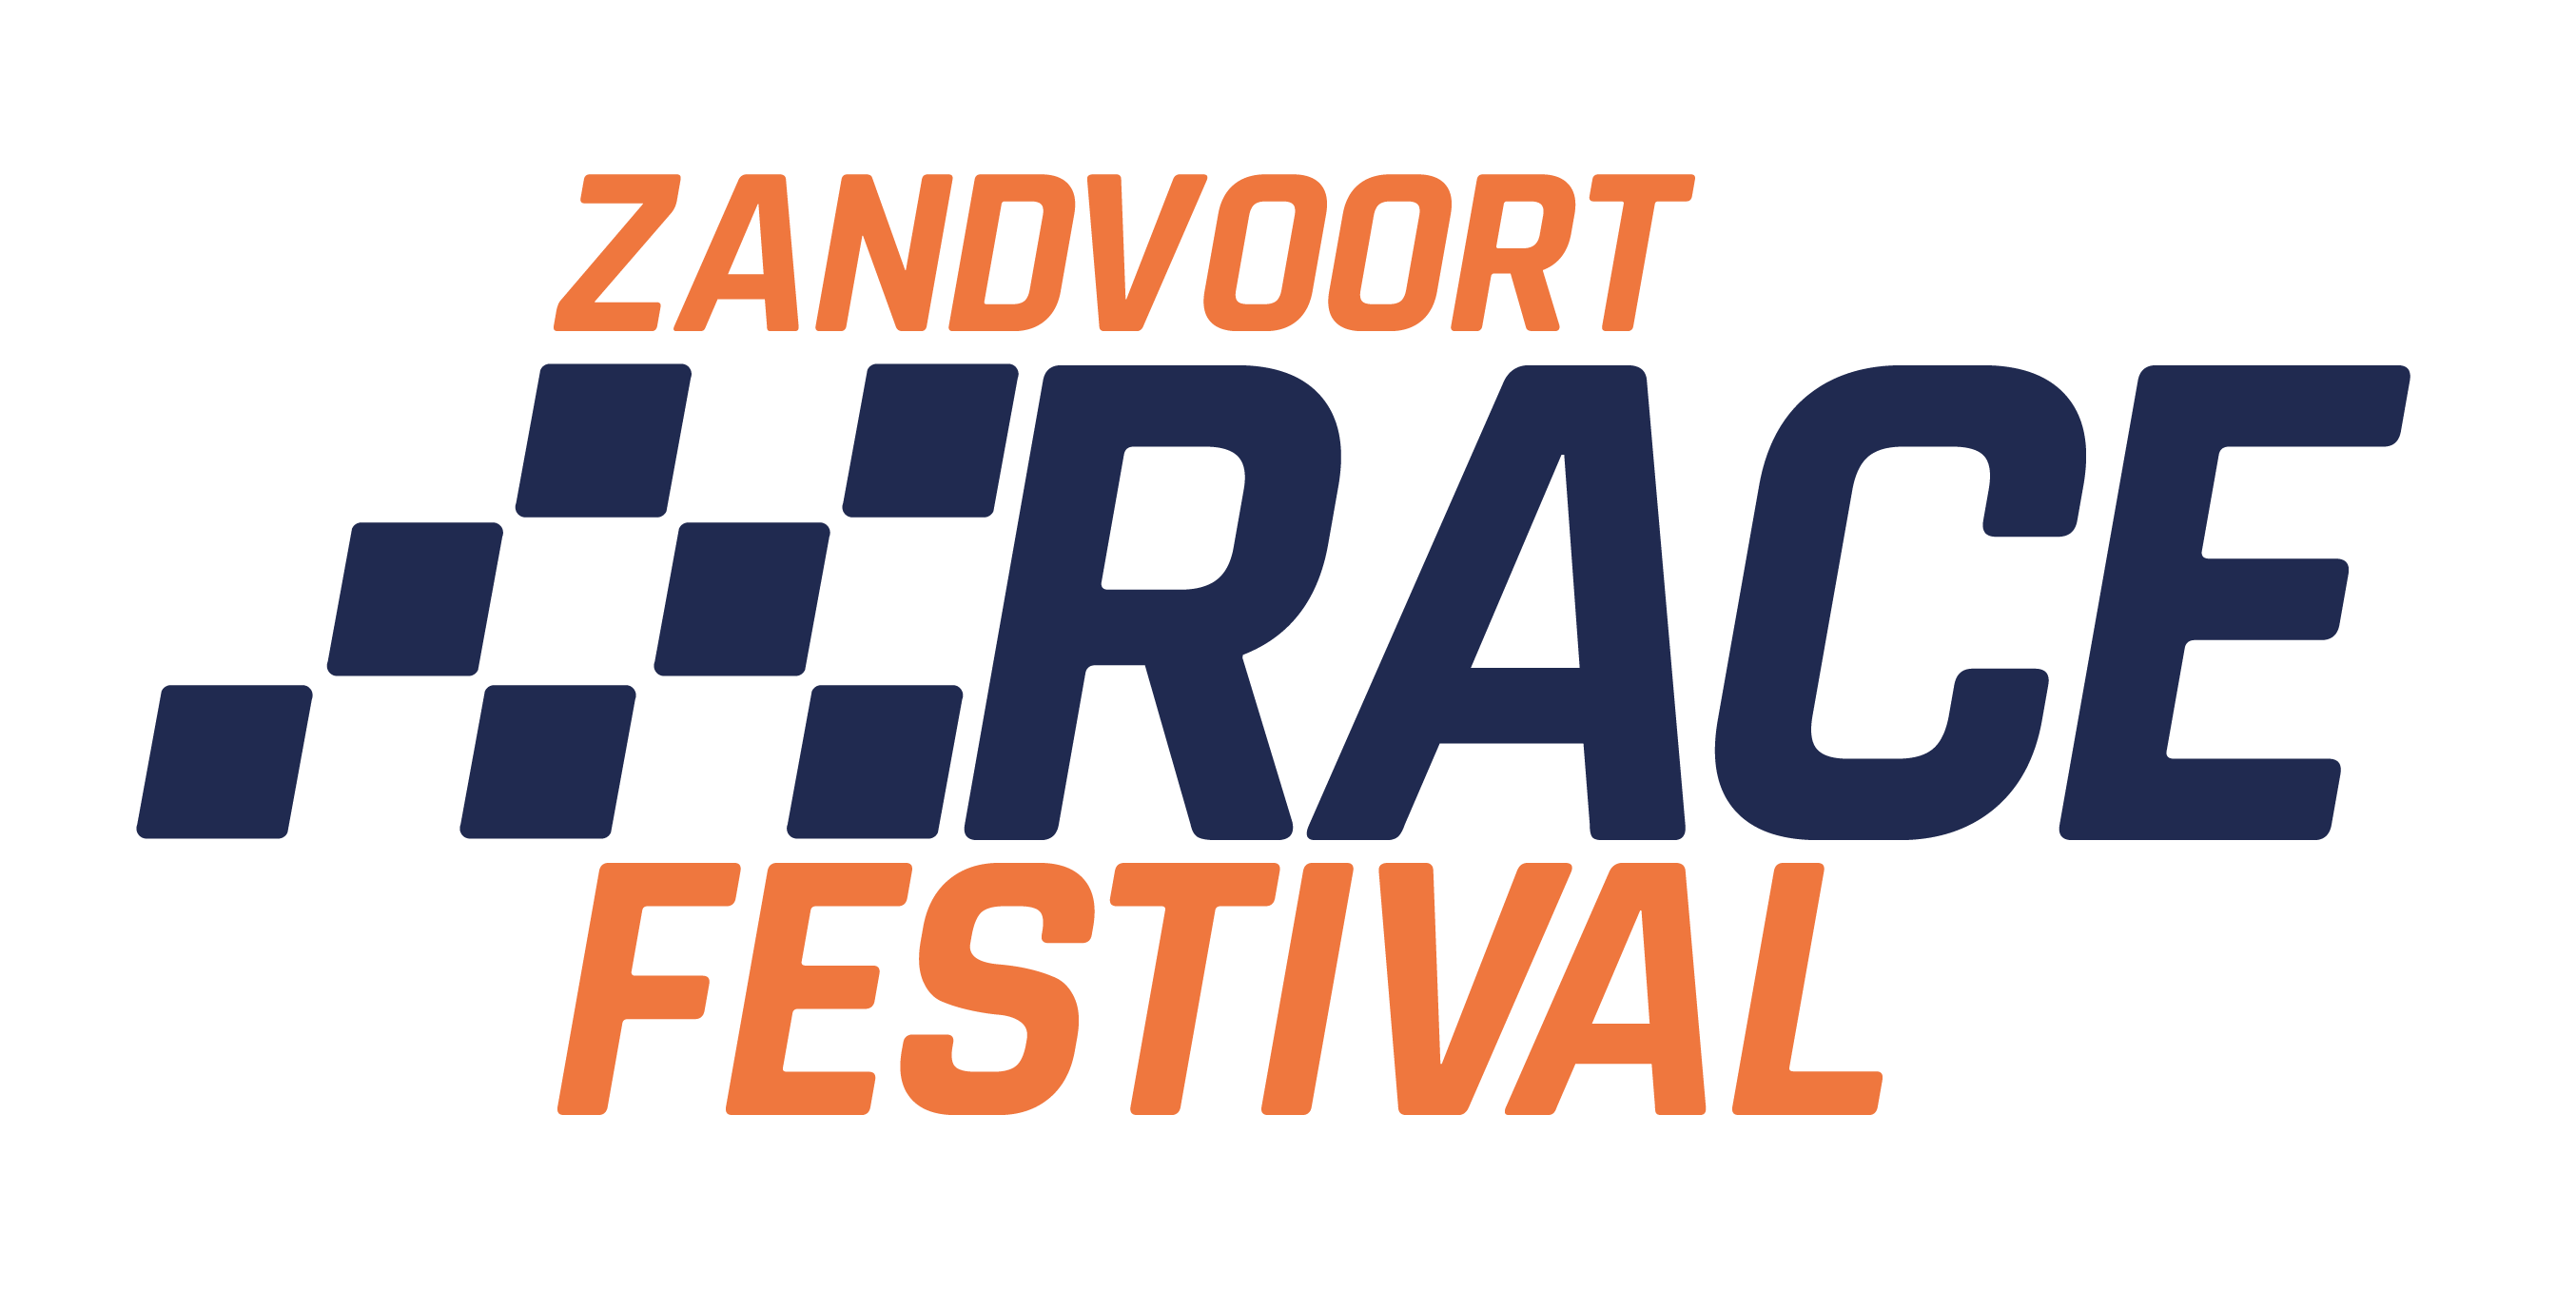 Visit Zandvoort Logo